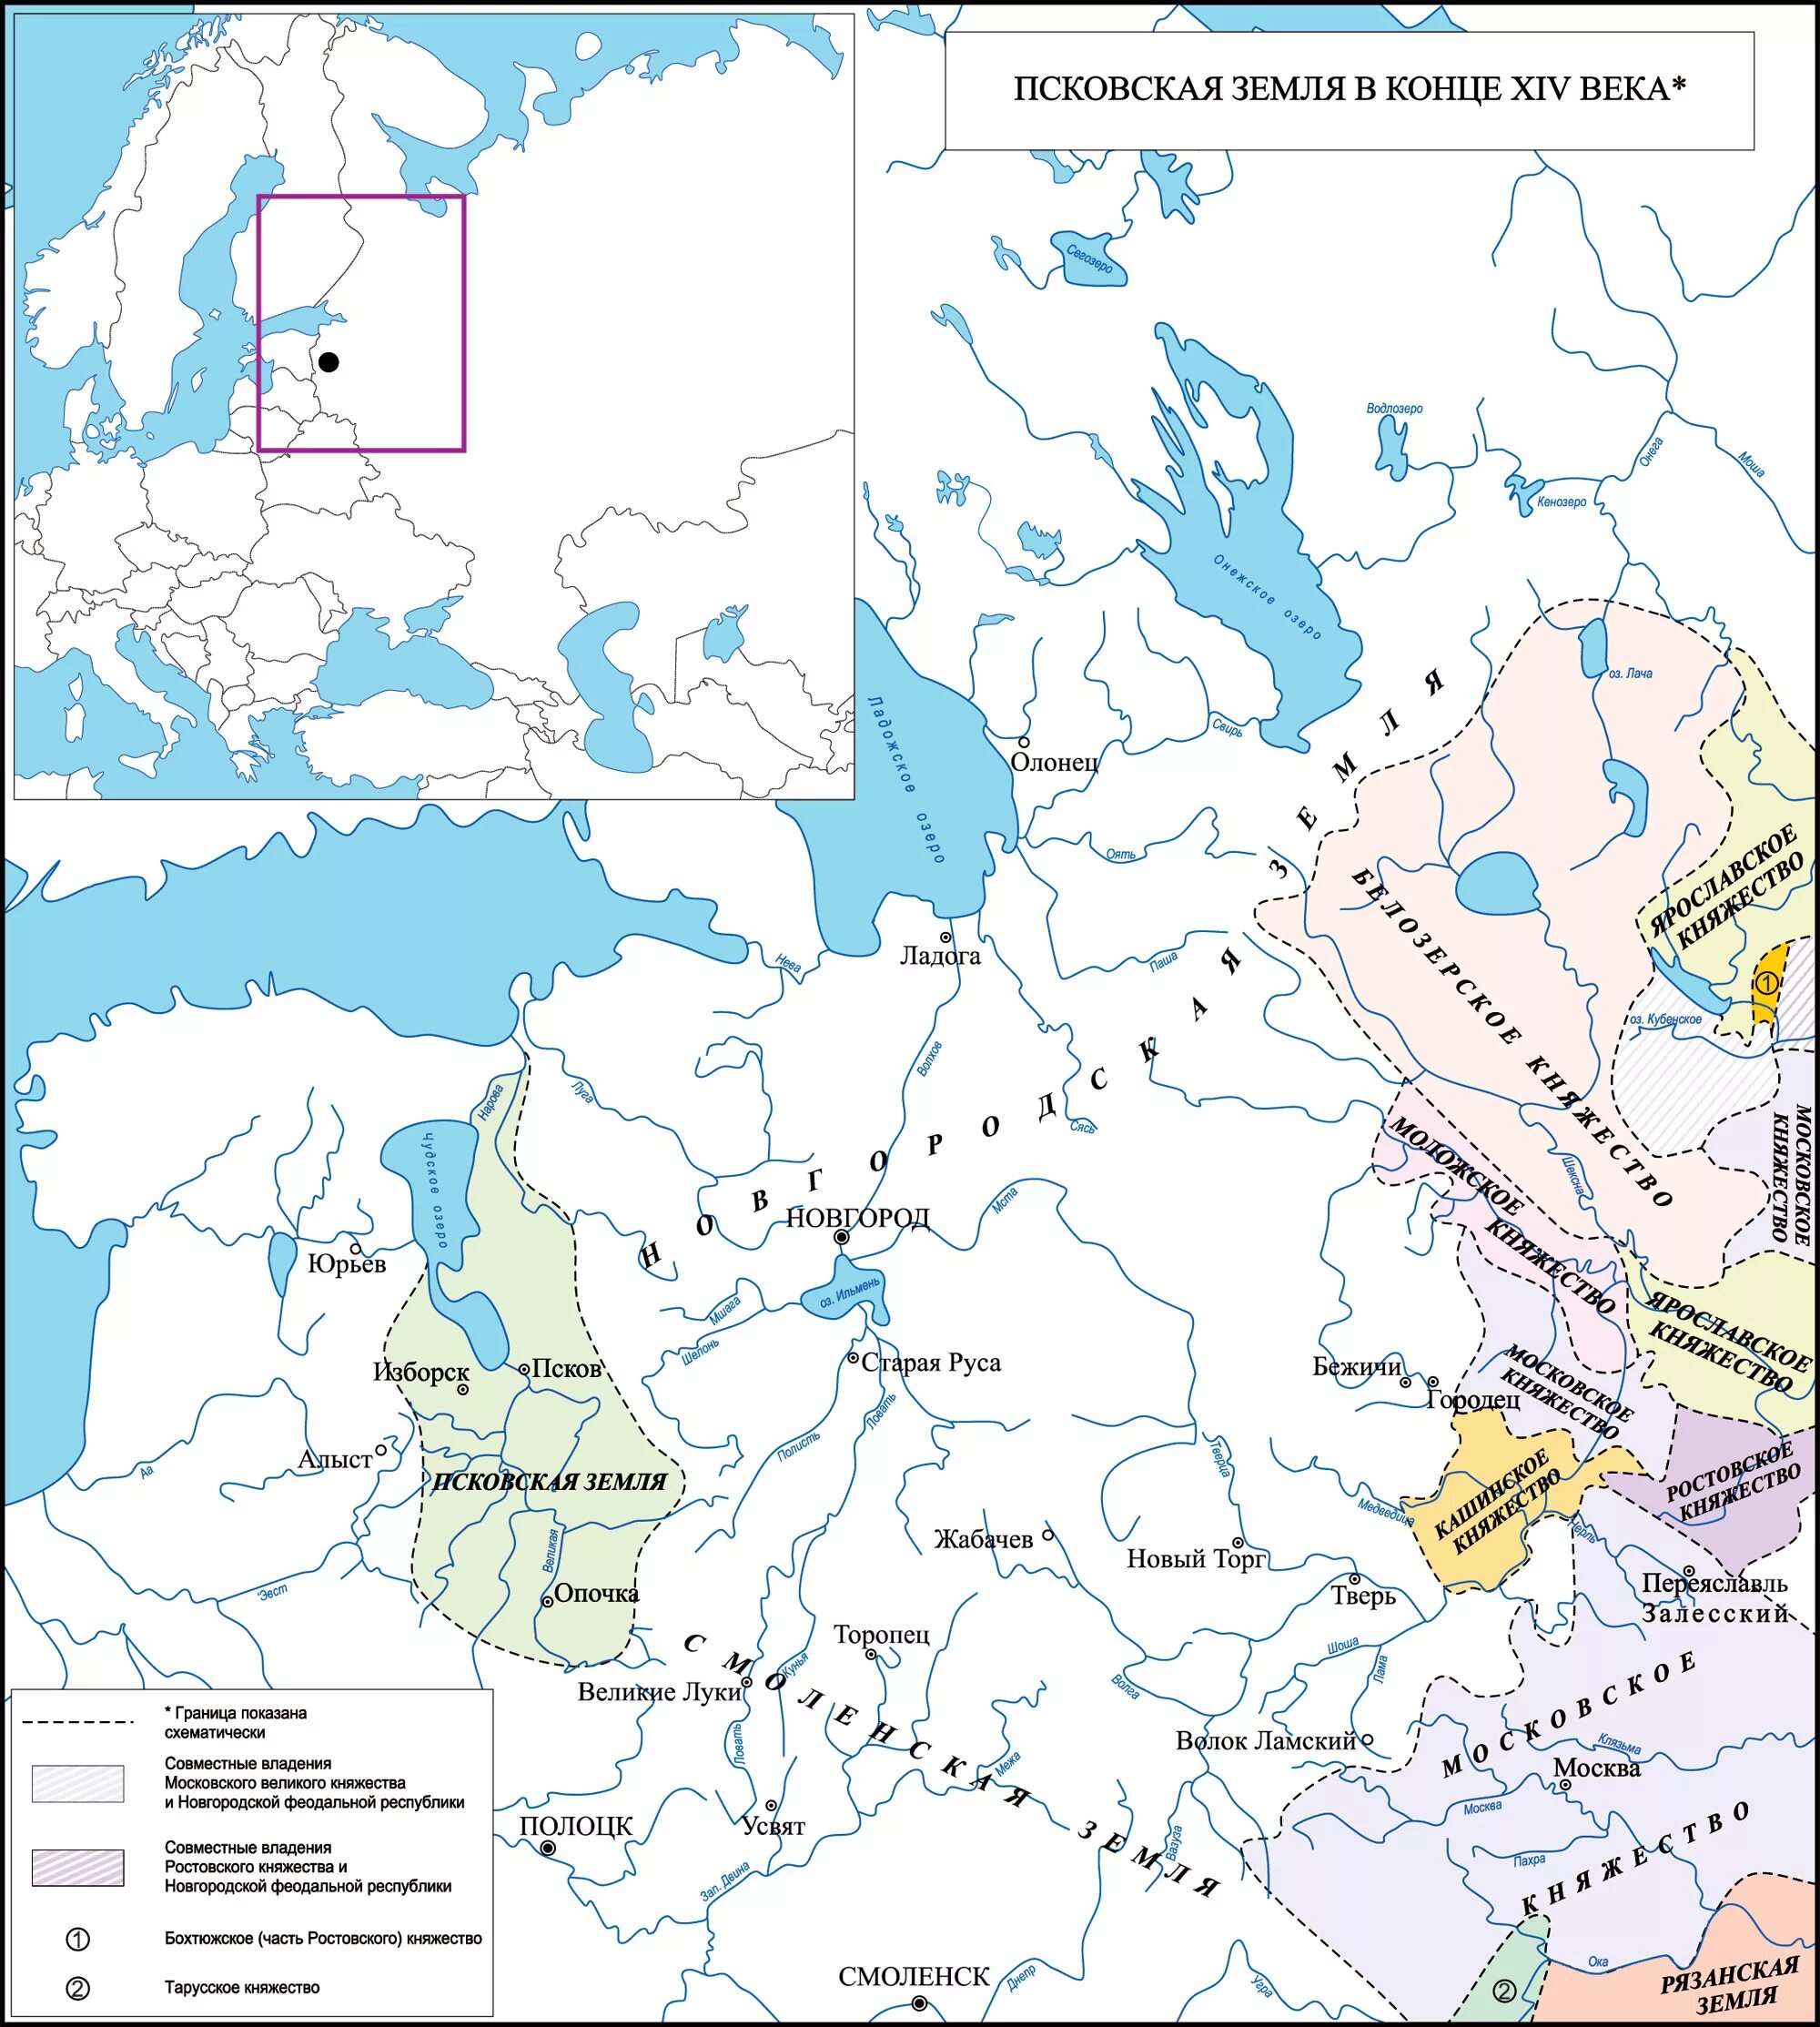 Карта новгородских земель 15 века